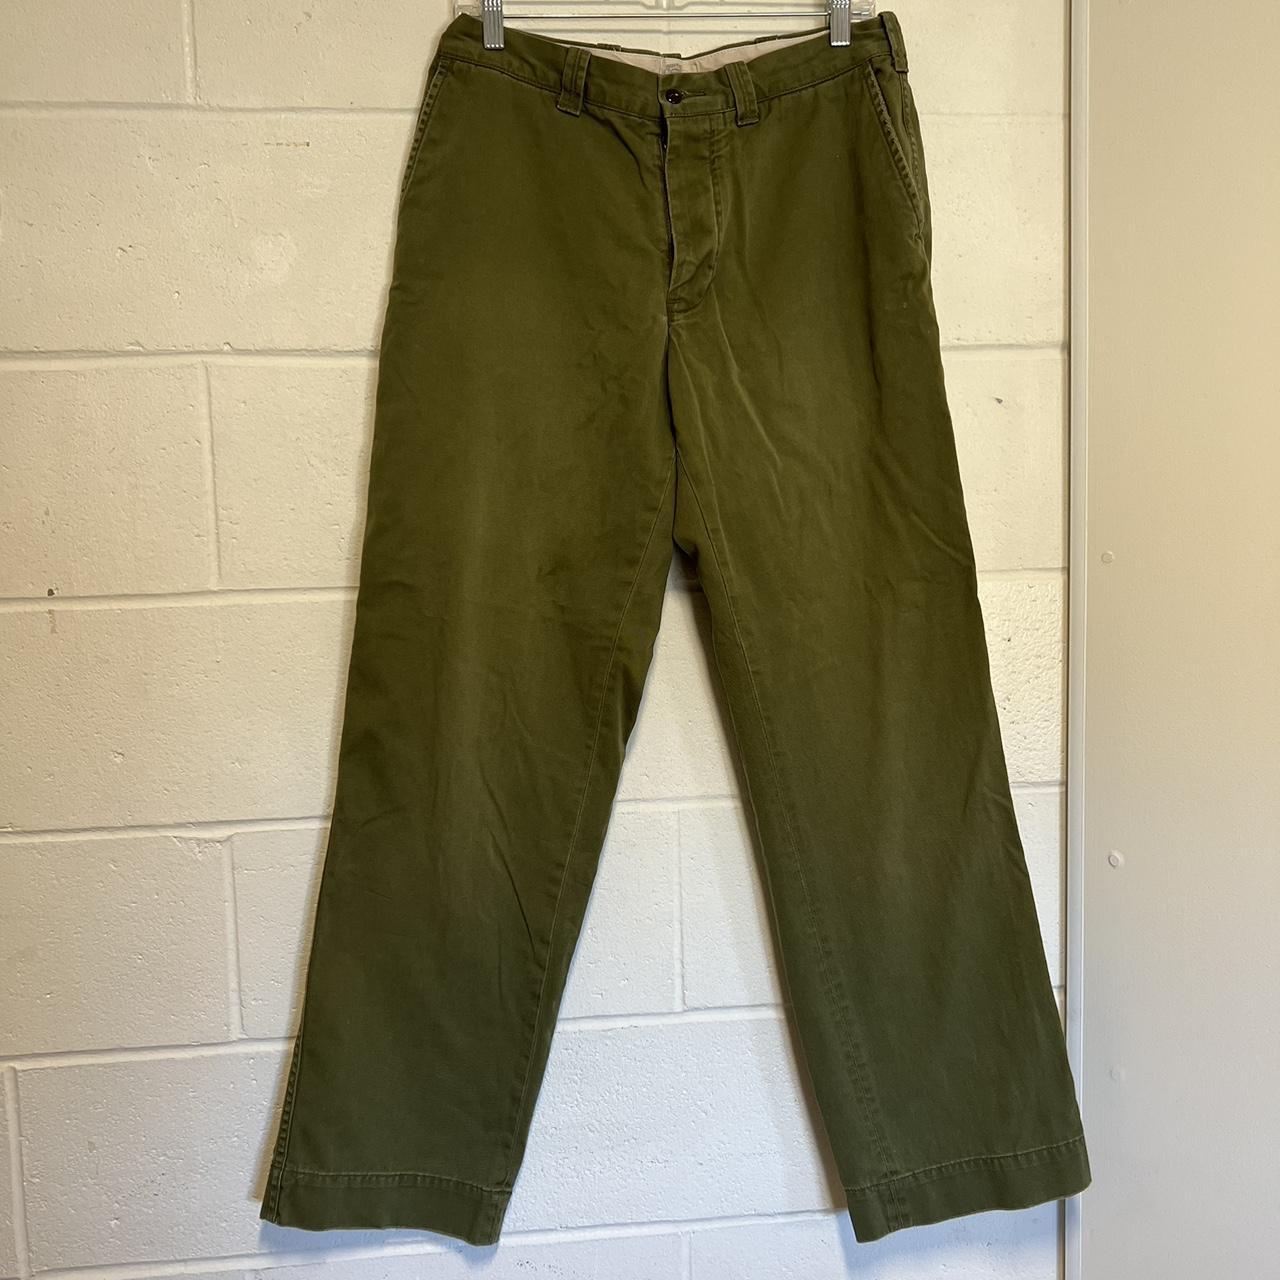 Buy Women Green Solid Formal Regular Fit Trousers Online  694673  Van  Heusen